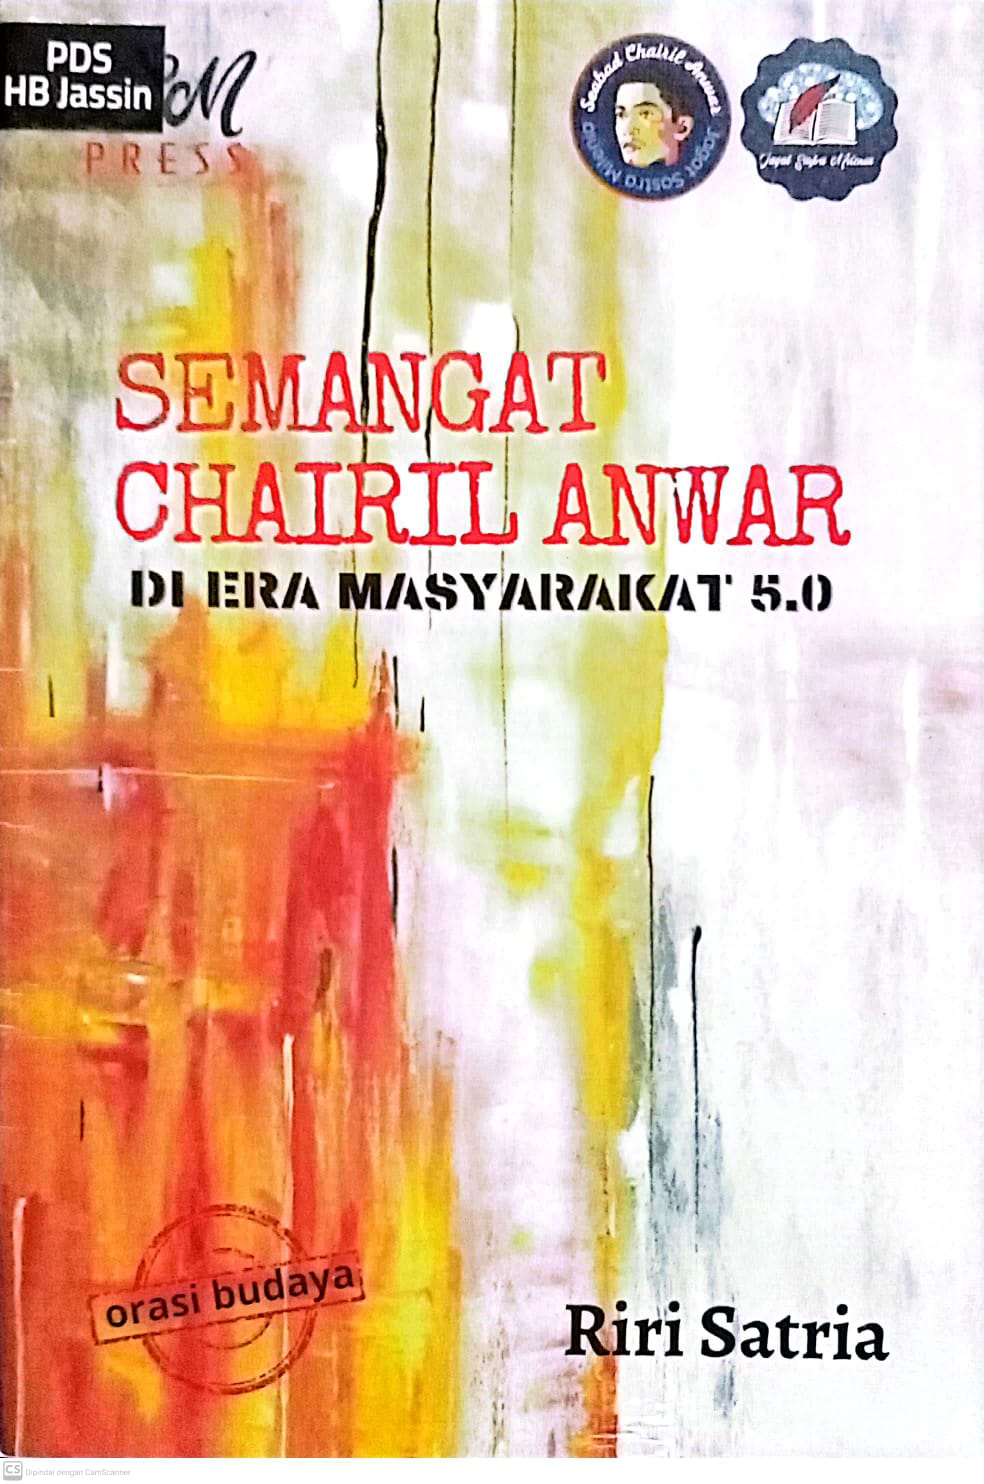 Semangat Chairil Anwar di era masyarakat 5.0